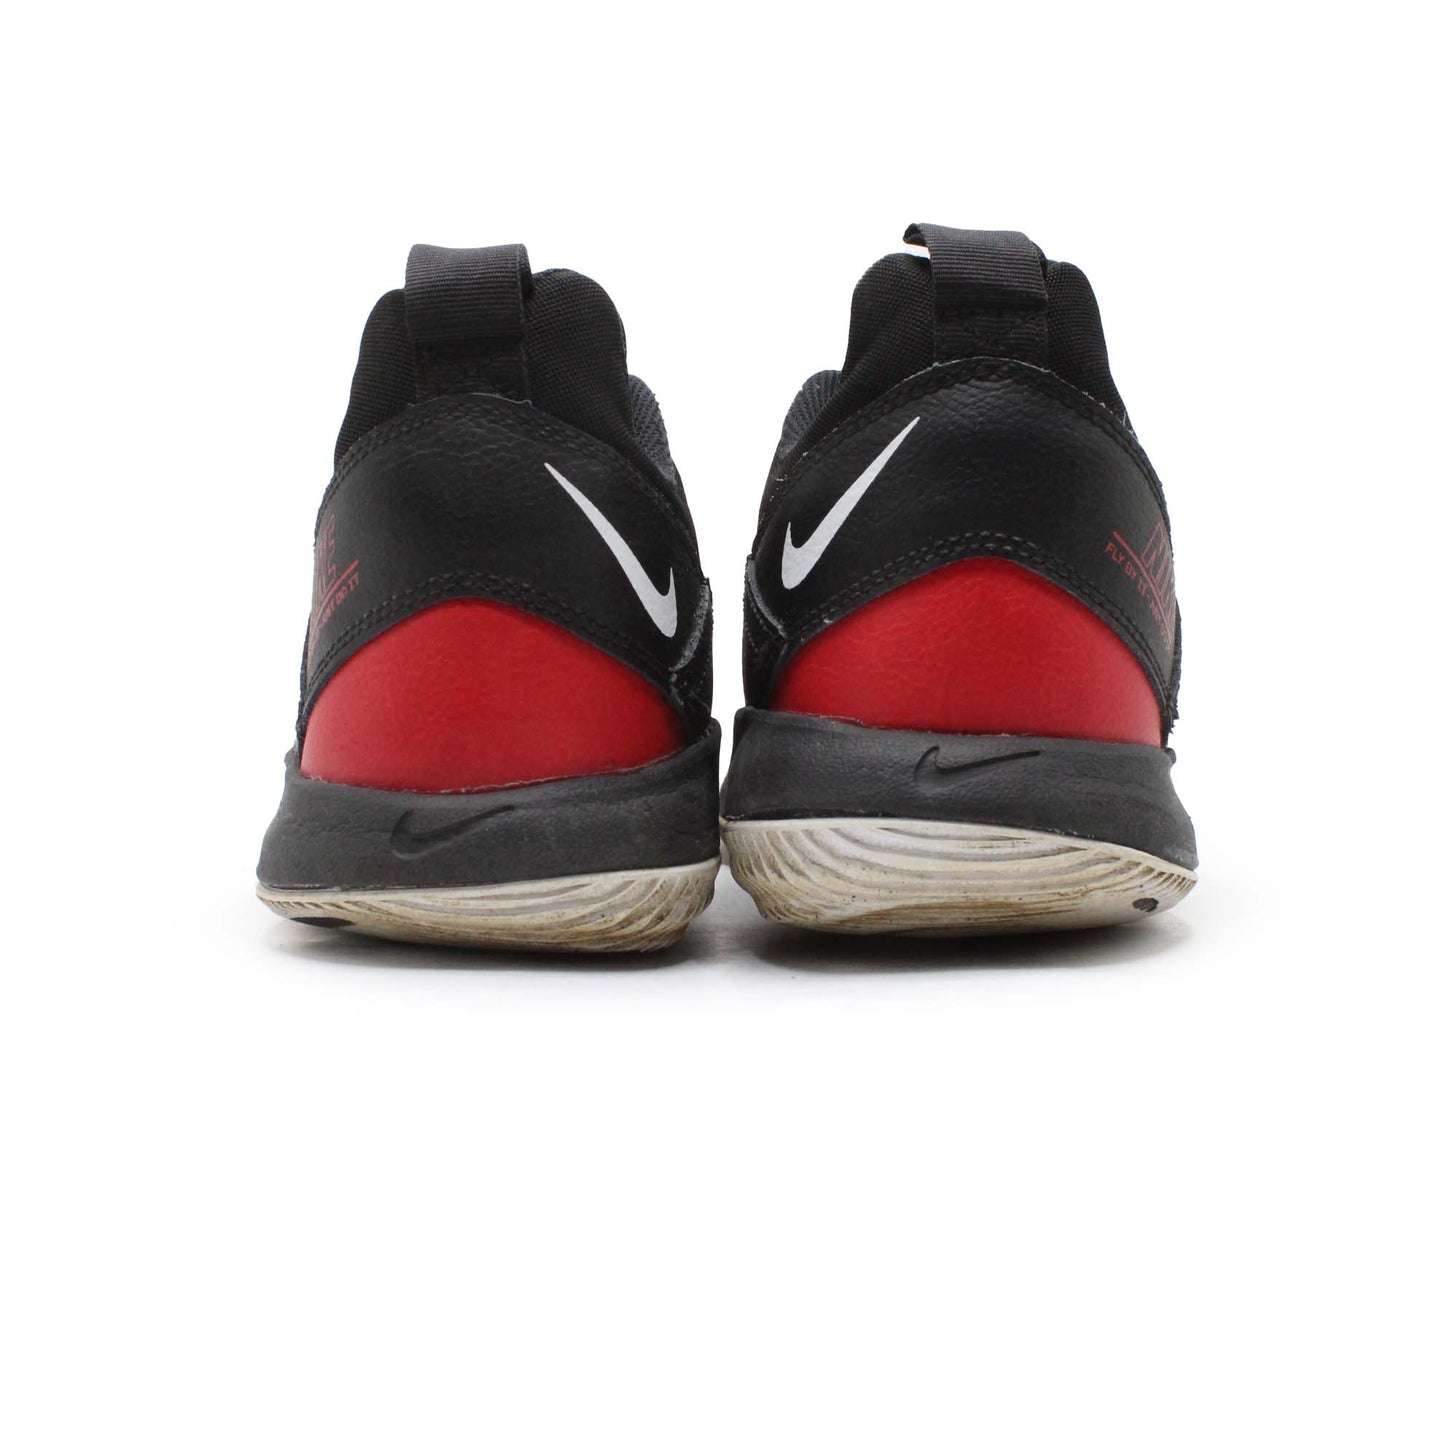 Nike Fly By II 2 Basketball Shoe